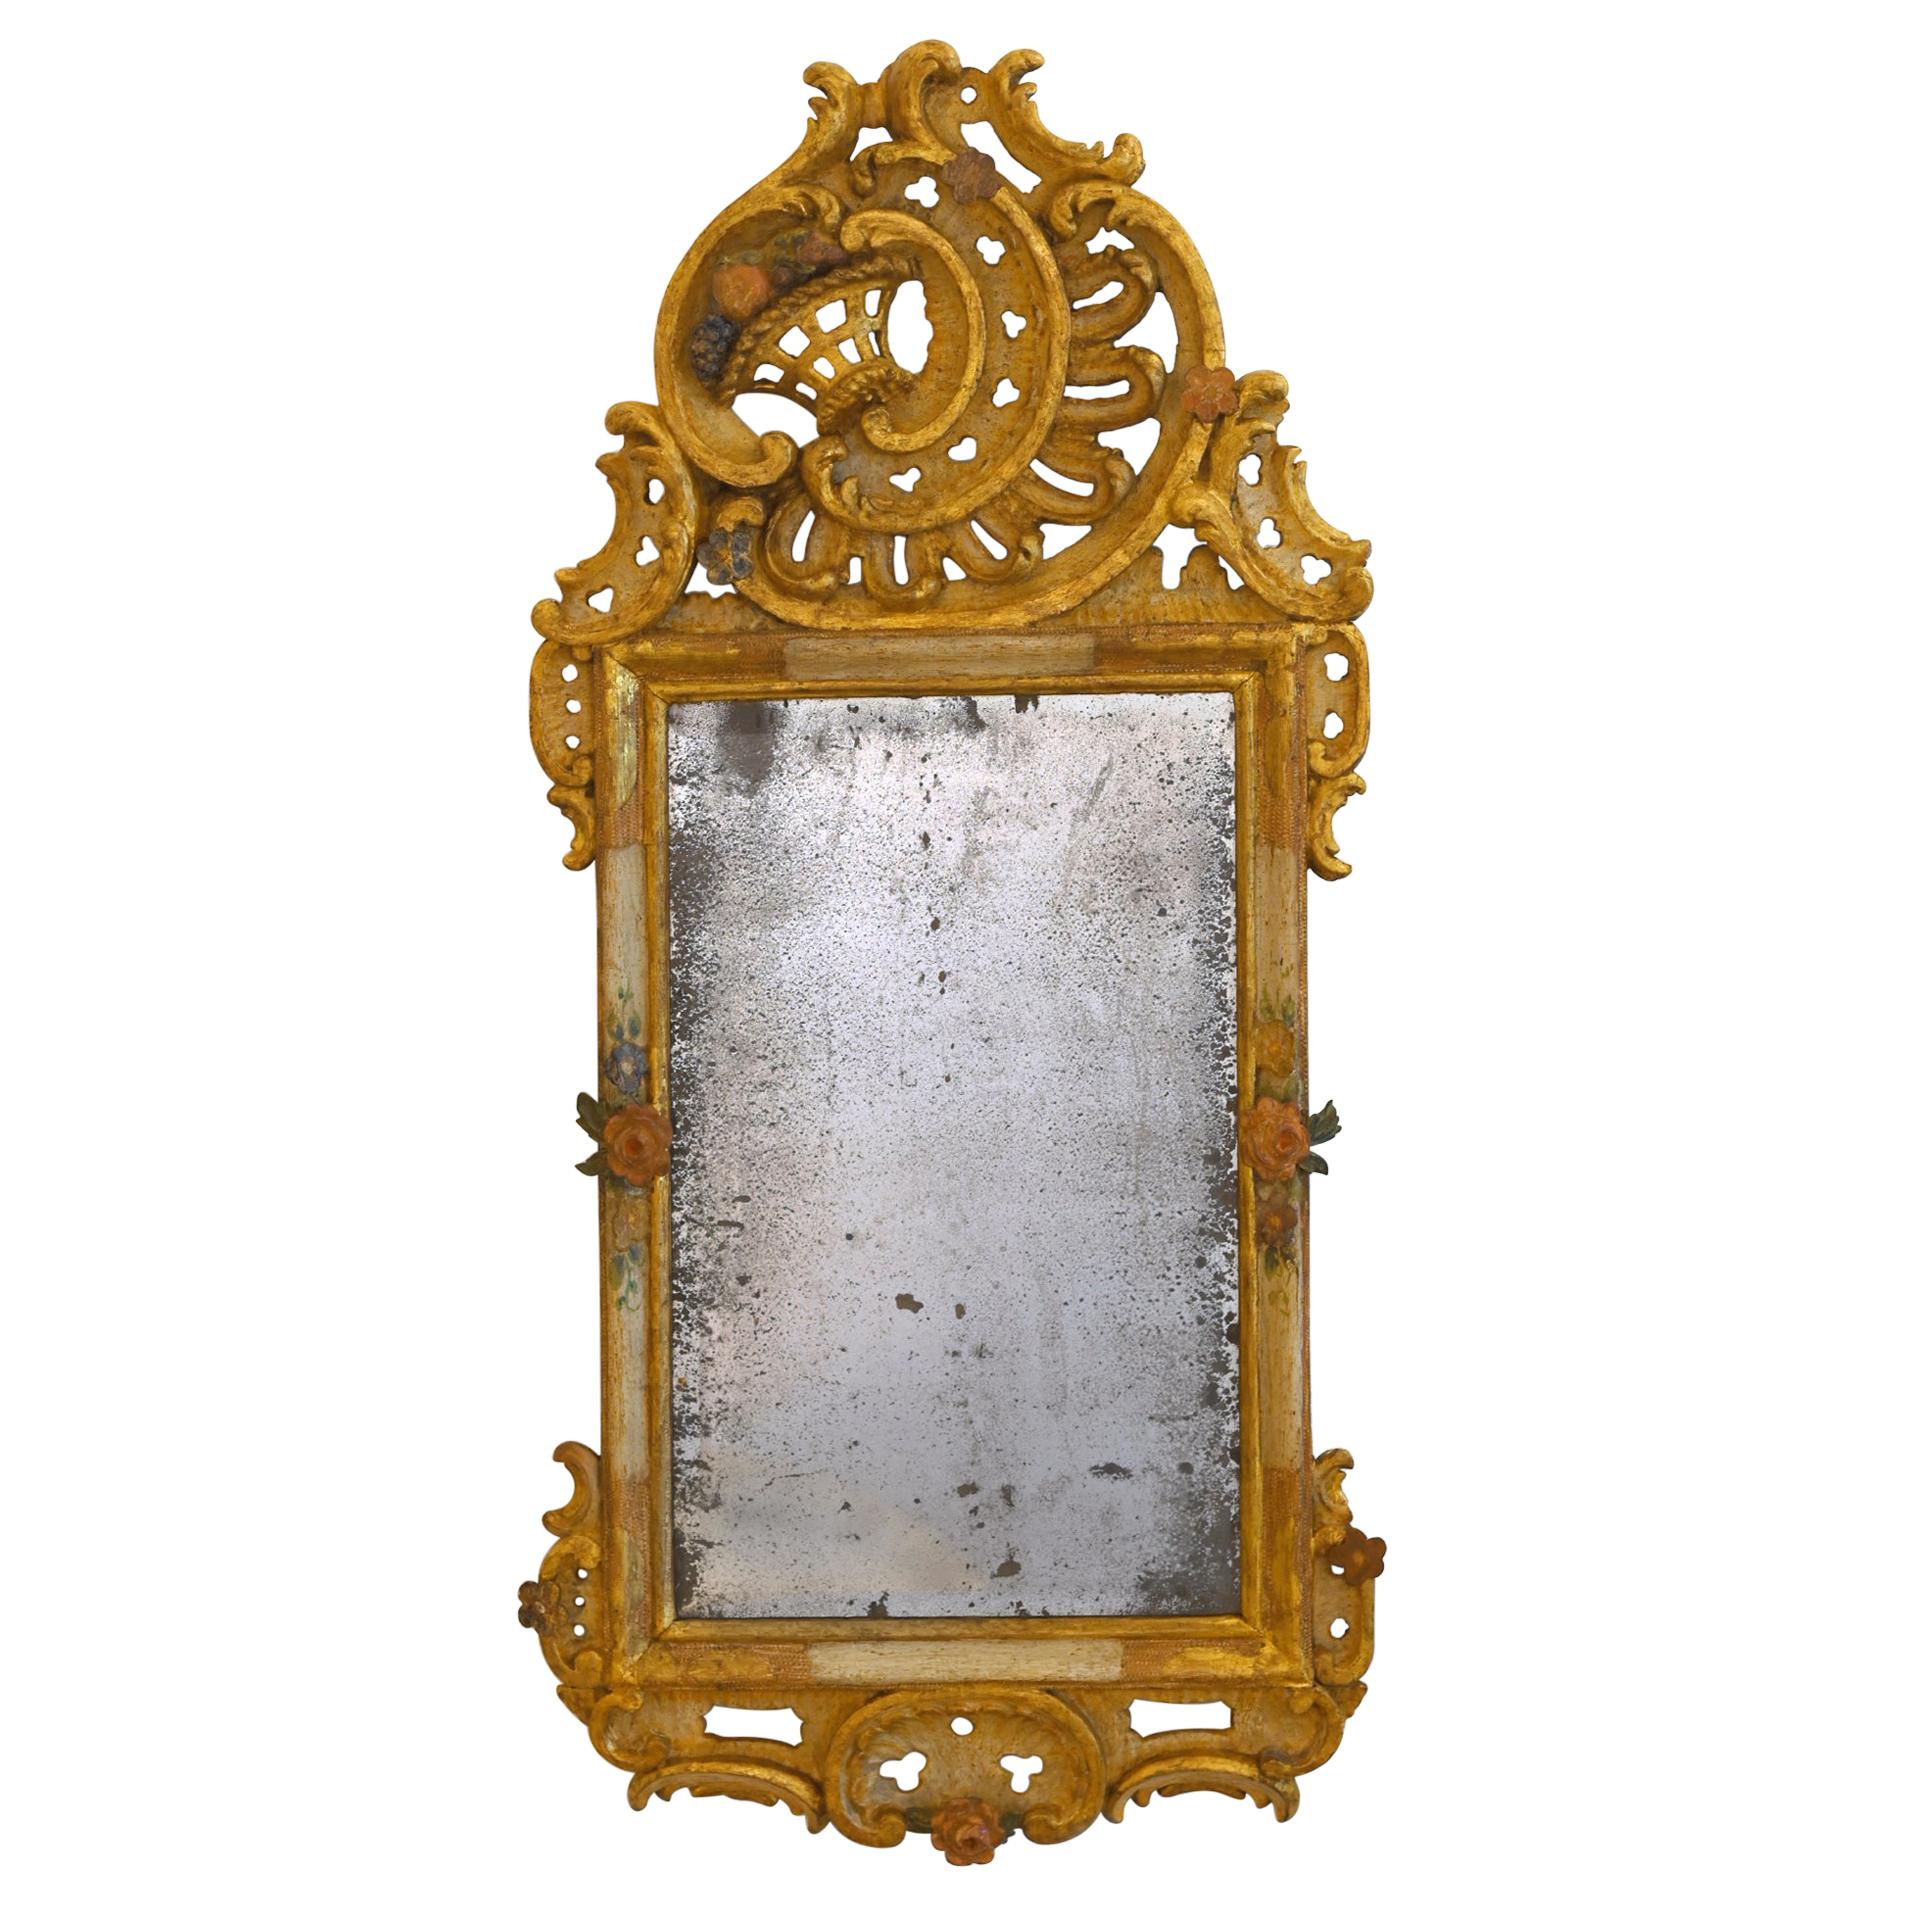 Spiegel aus geschnitztem, polychrom lackiertem Bayreuth-Spiegel, Süddeutschland, 18. Jahrhundert